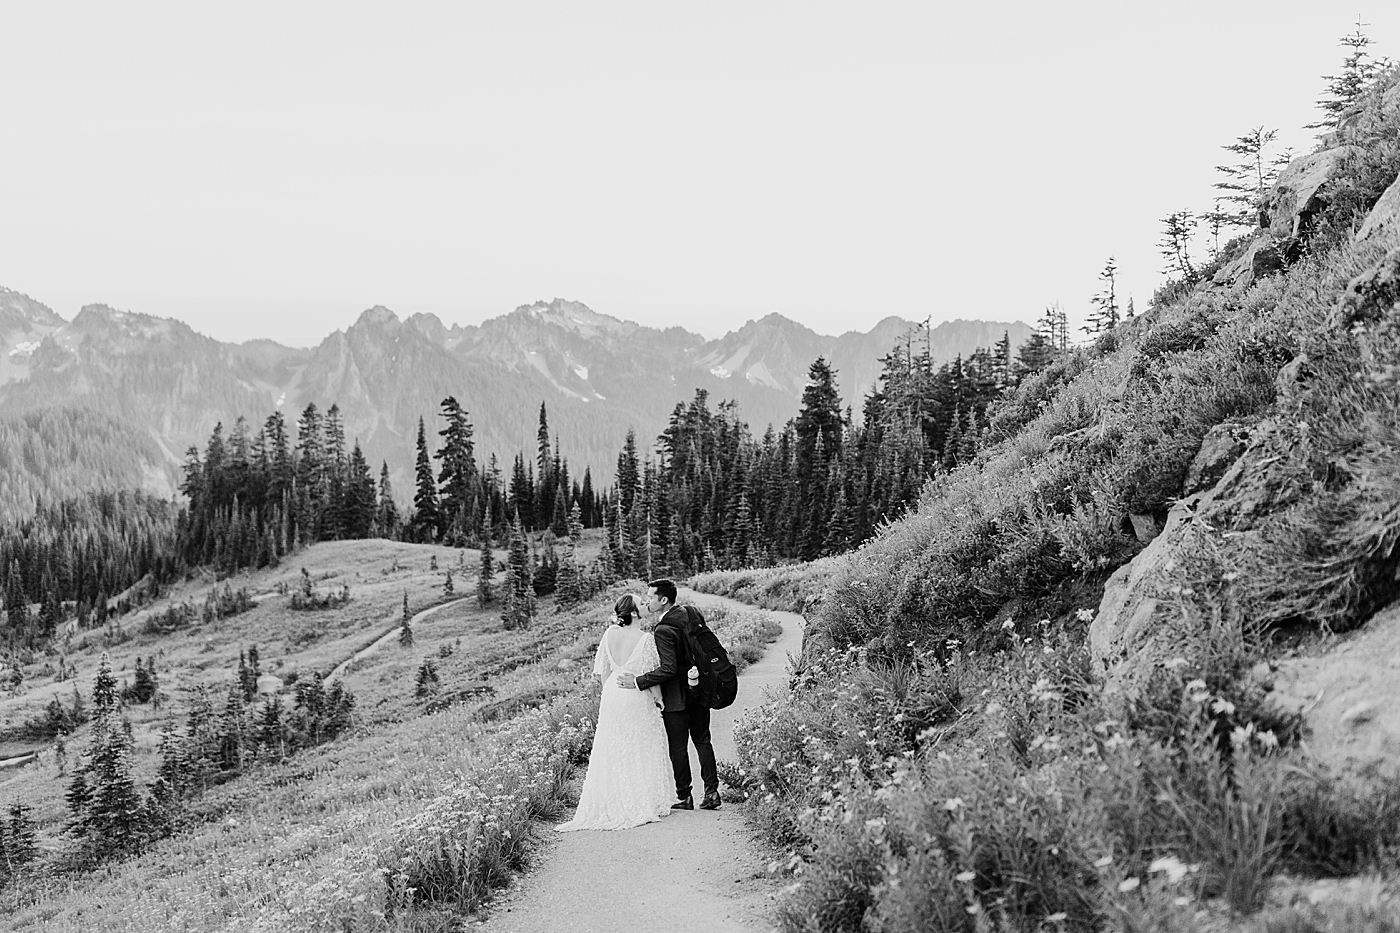 Destination elopement at Mount Rainier National Park. Photo by Megan Montalvo Photography.